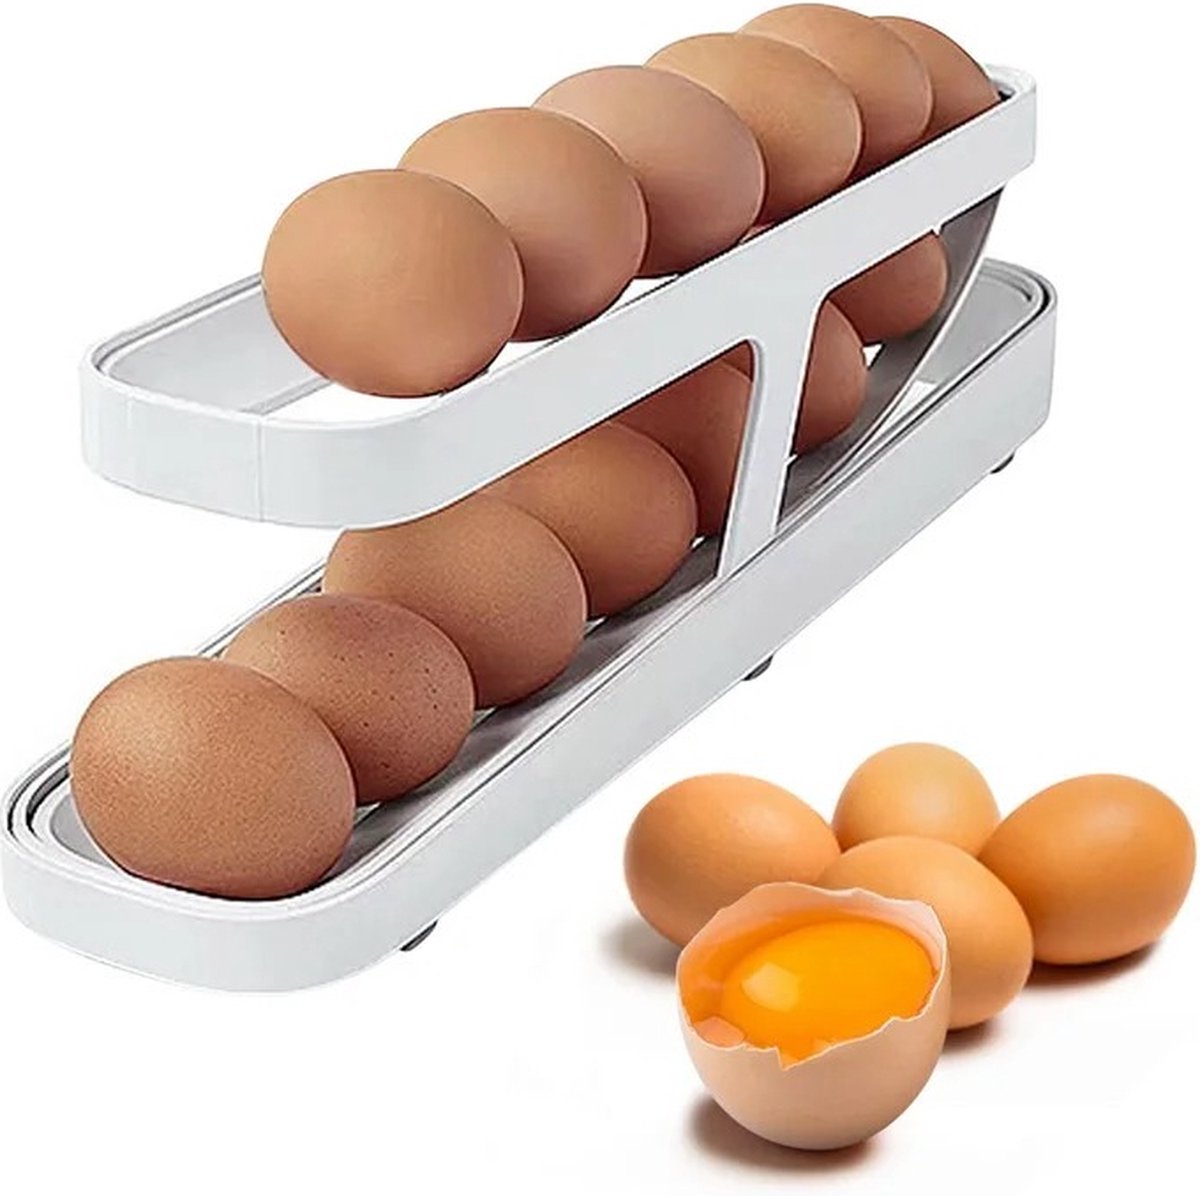 H.K.H Store Eierhouder voor de koelkast - automatisch rollende eierdispenser voor het opbergen in de koelkast - rolldown eierorganizer - eierhouder voor de keuken